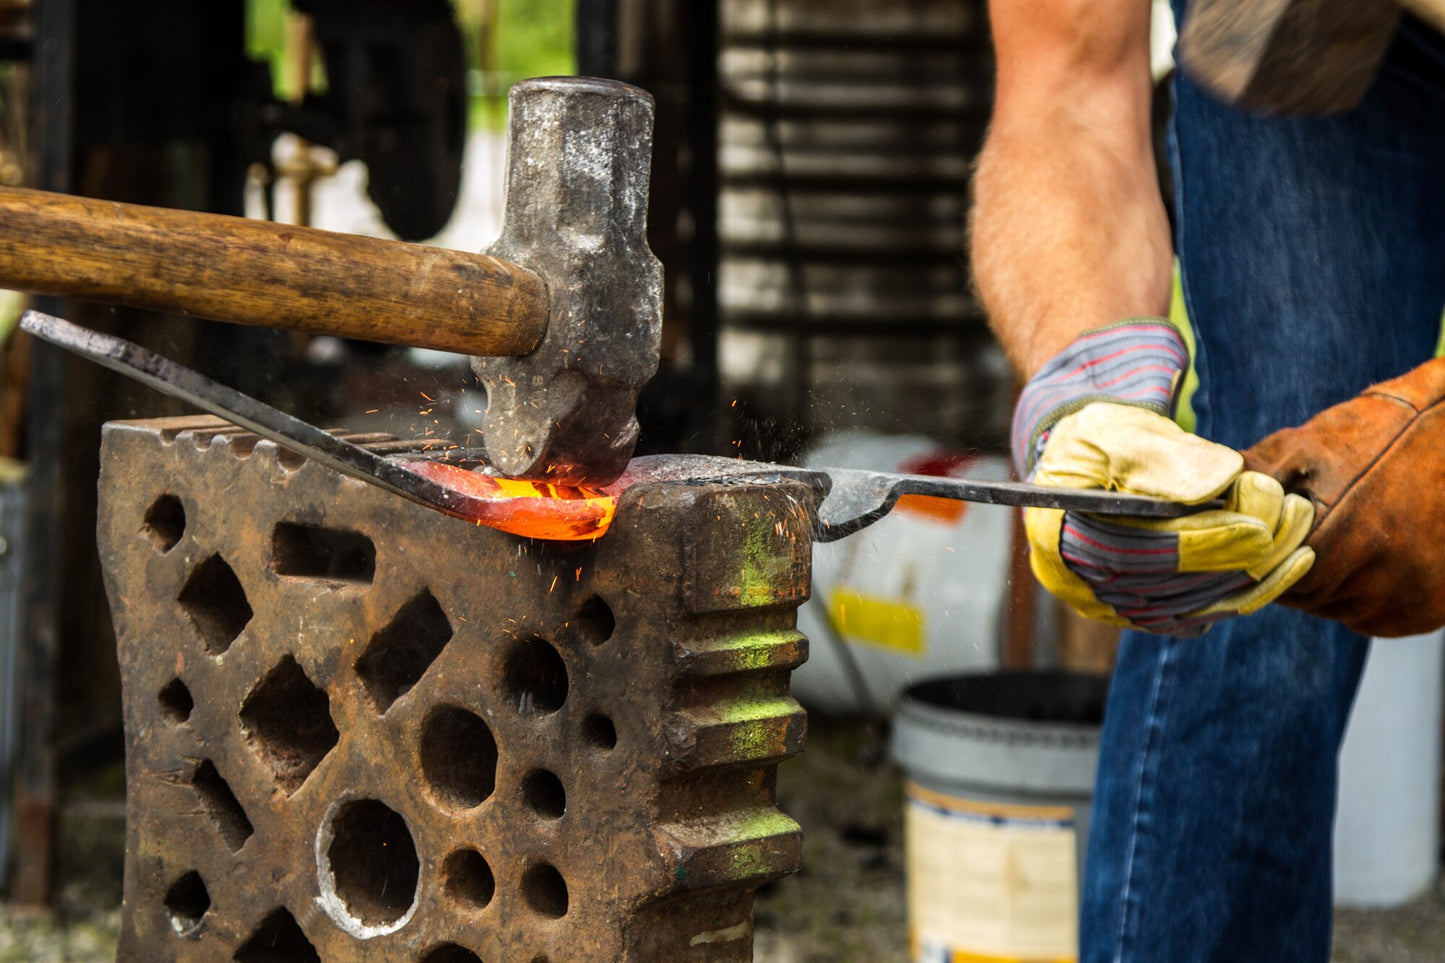 Beginning Blacksmithing: Utensils - June 24 & 25 -  www.